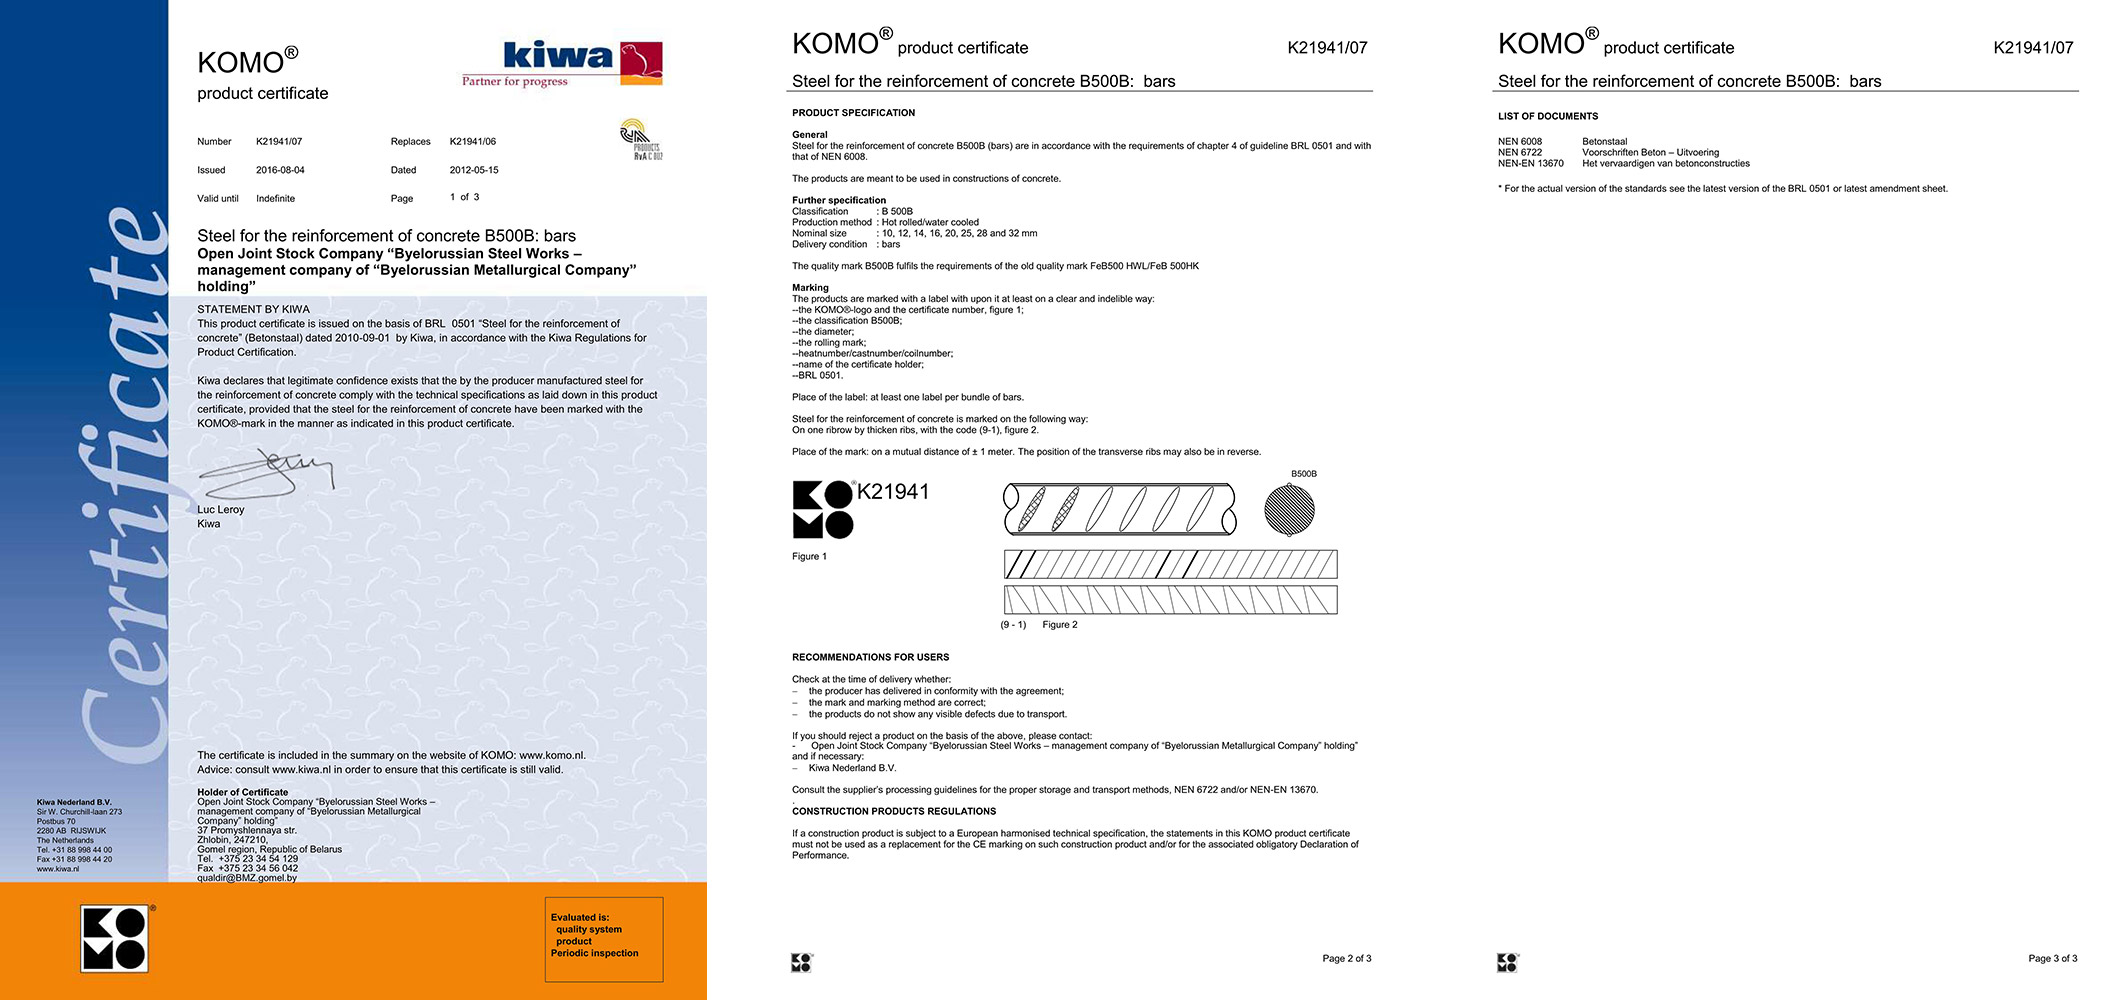 Сертификат соответствия фирмы KIWA (Голландия) № К21941/07 на производство арматурной стали марки B500B в прутках ø 10-32 мм в соответствии с BRL 0501 и стандартом NEN 6008